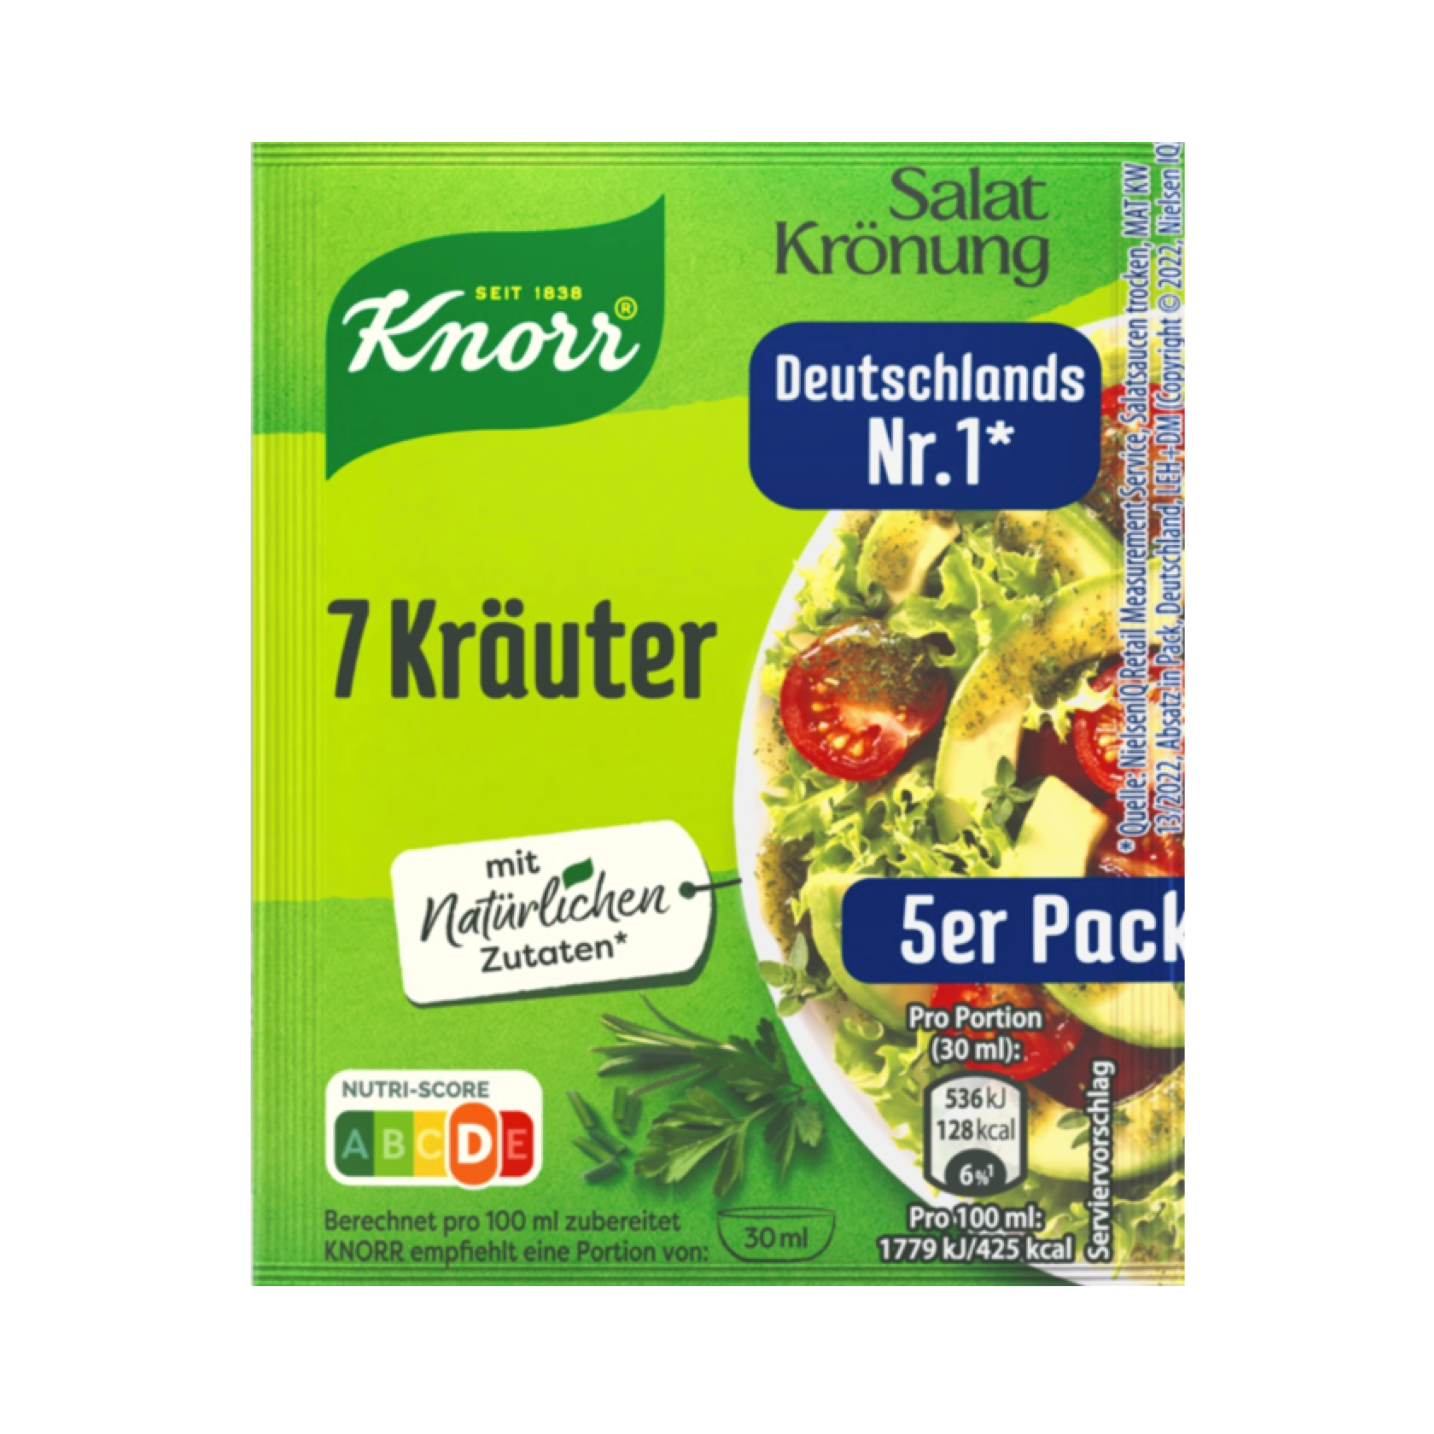 Knorr Salatkrönung 7 Kräuter 5 Pack